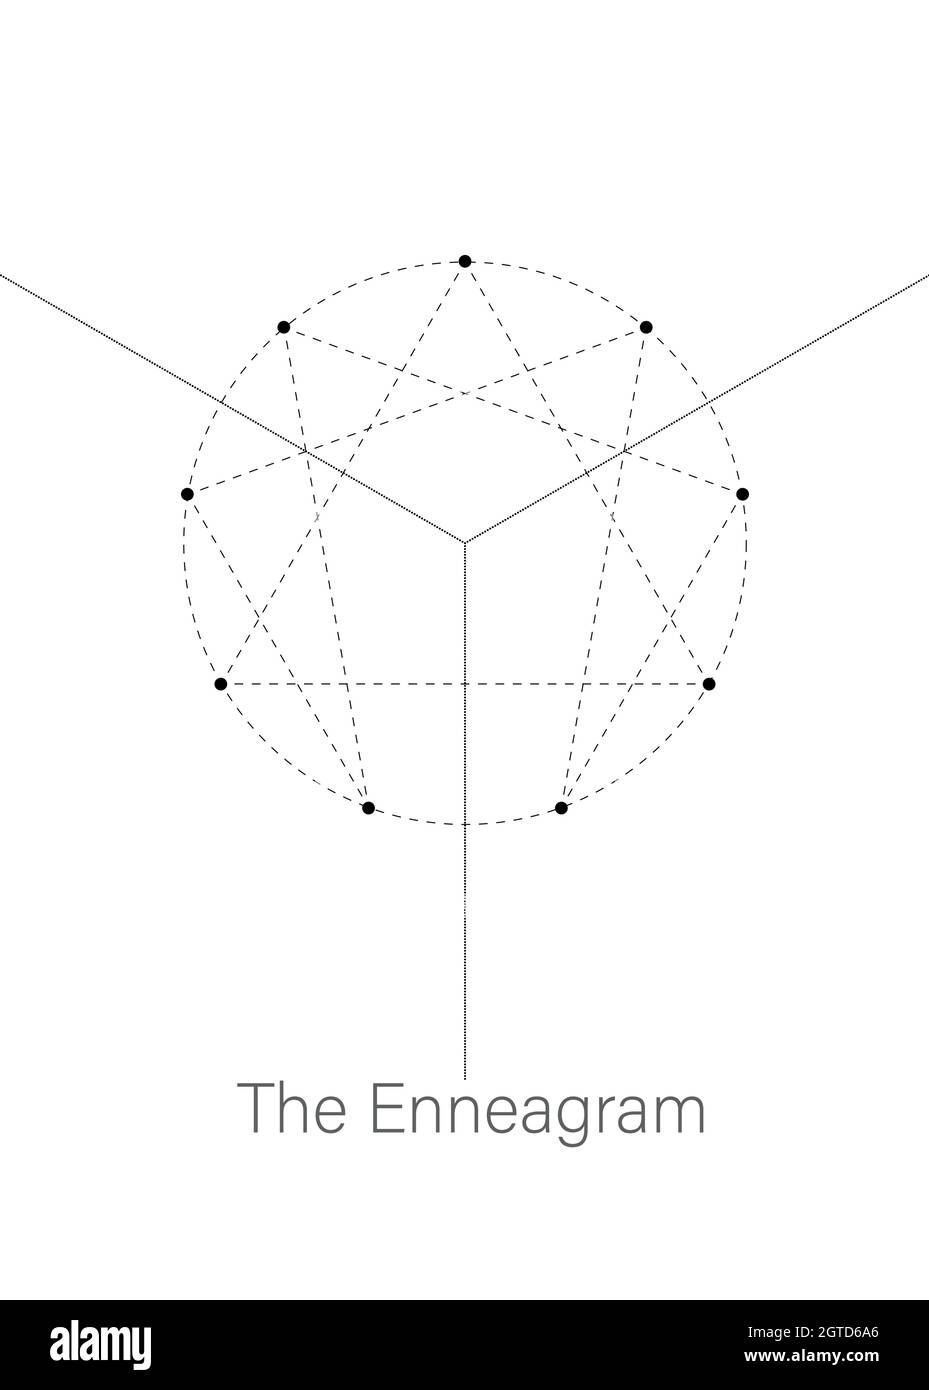 Icône Enneagram, géométrie sacrée, modèle de logo de diagramme, avec des nombres de un à neuf concernant les neuf types de personnalité, ligne pointillée noire Illustration de Vecteur